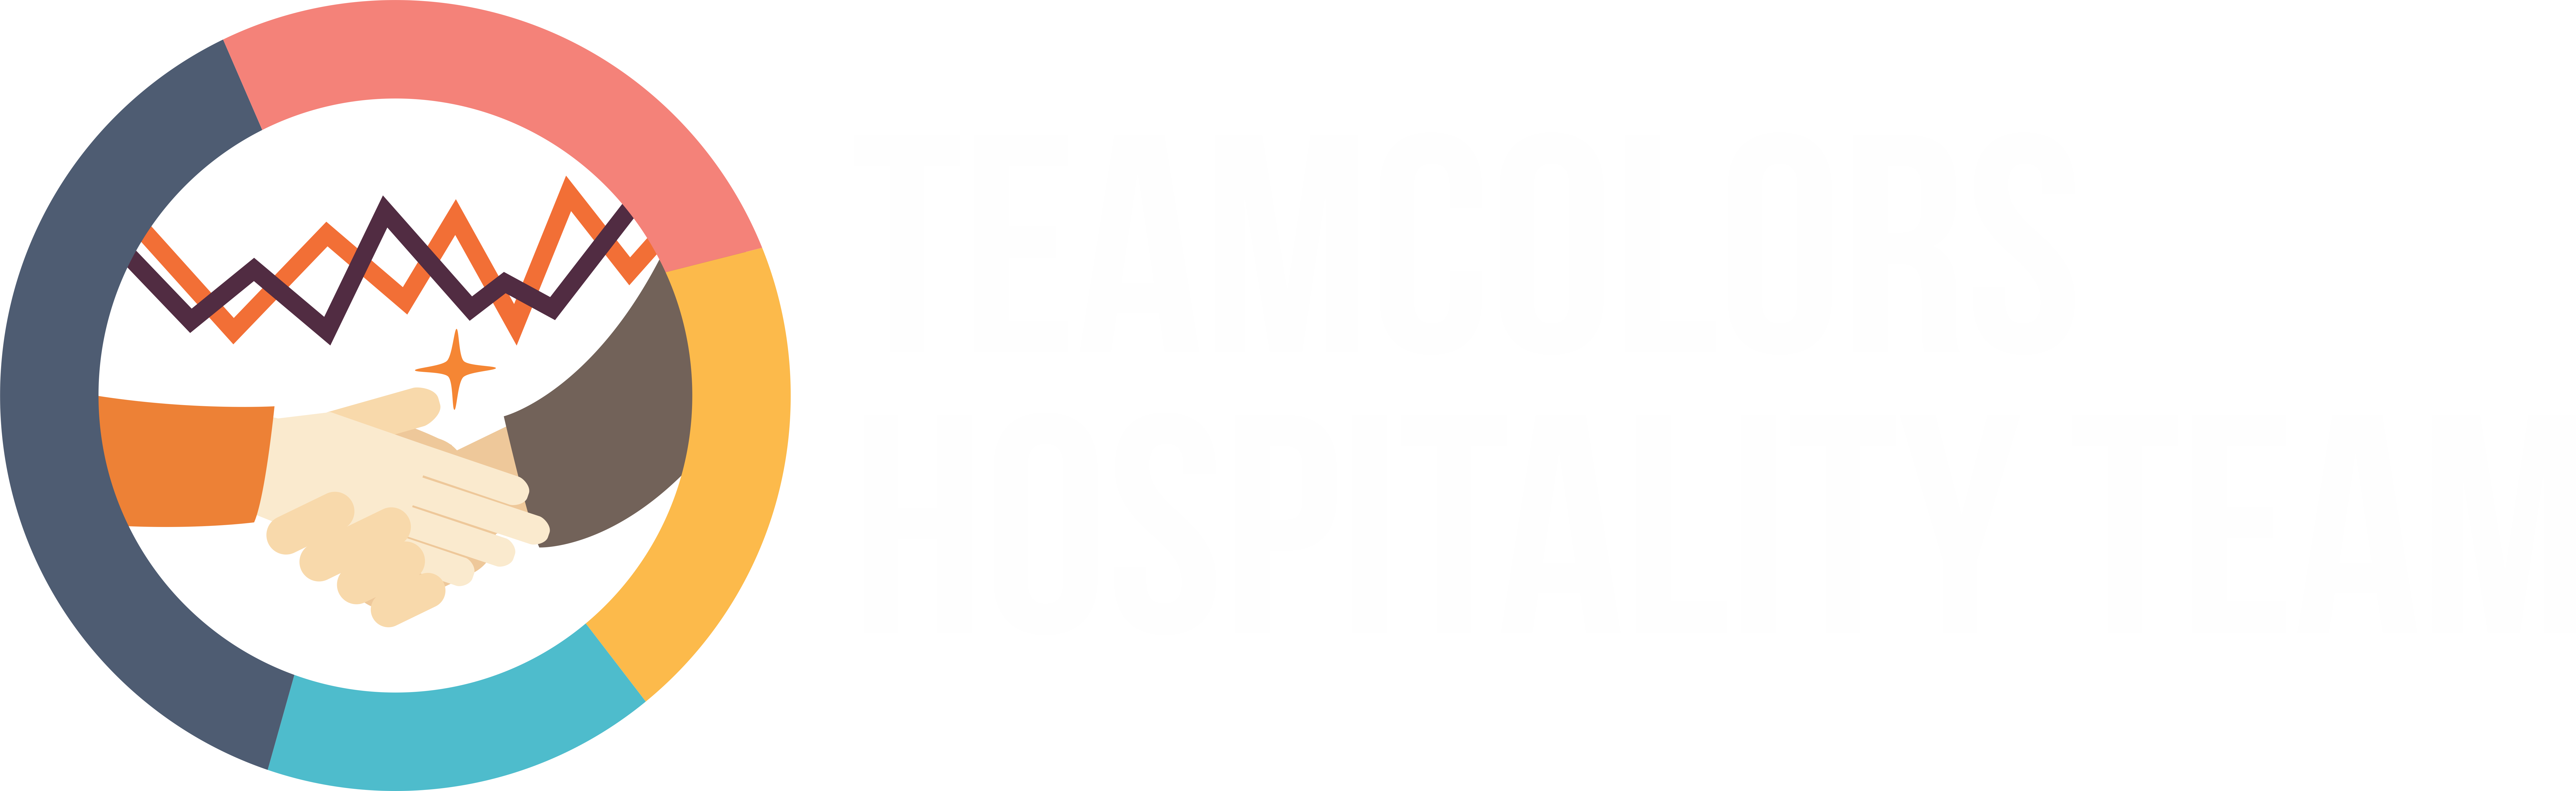 Hospitality teams colored brain. Teamwork clipart synergy